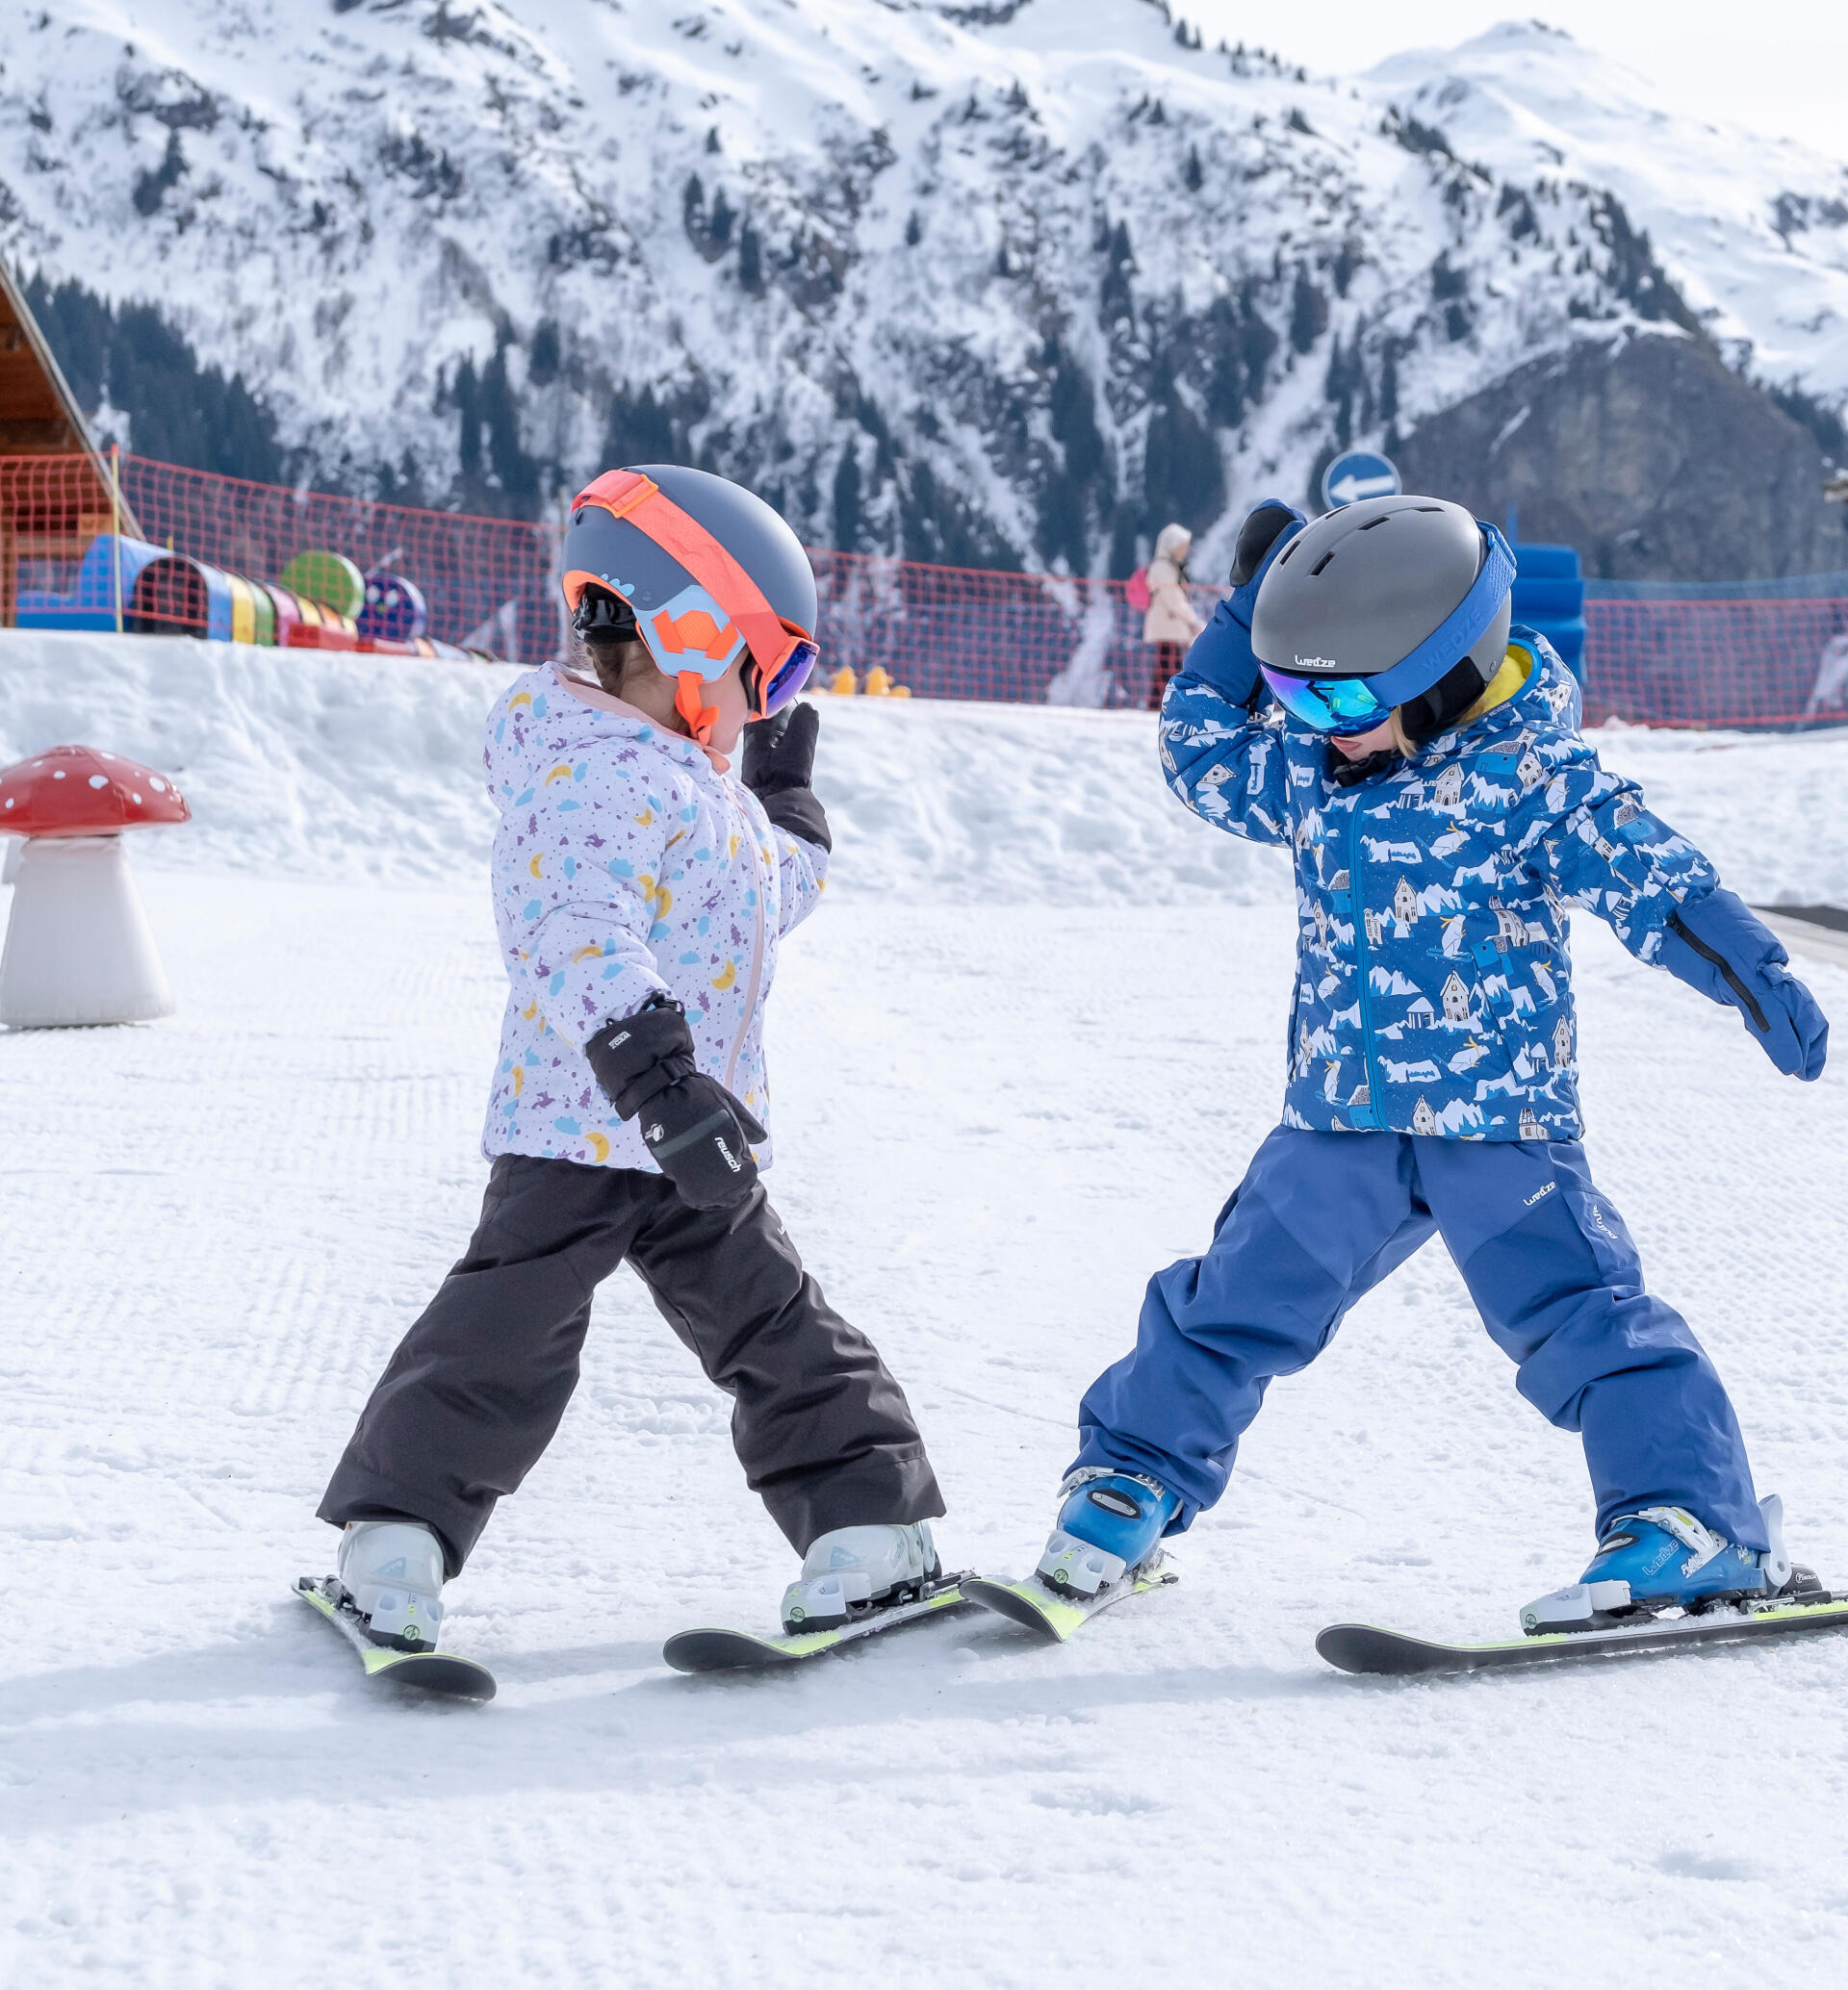 Hur väljer jag slalomskidor till mitt barn?